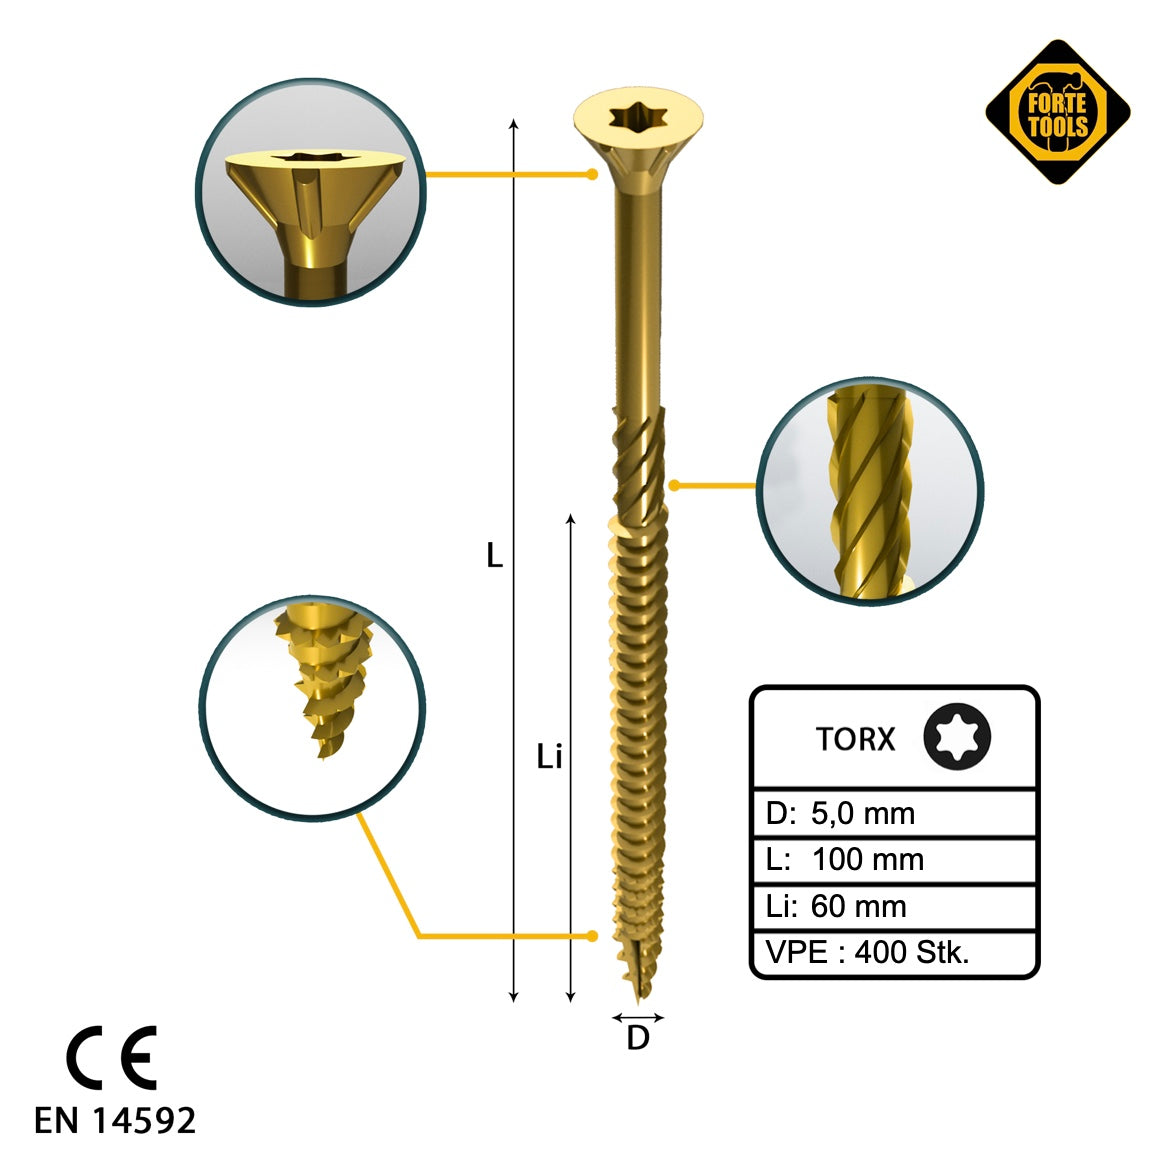 FORTE Tools Universal Holzschraube 5,0 x 100 mm T25 400 Stk. ( 4x 000051399483 ) gelb verzinkt Torx Senkkopf Teilgewinde